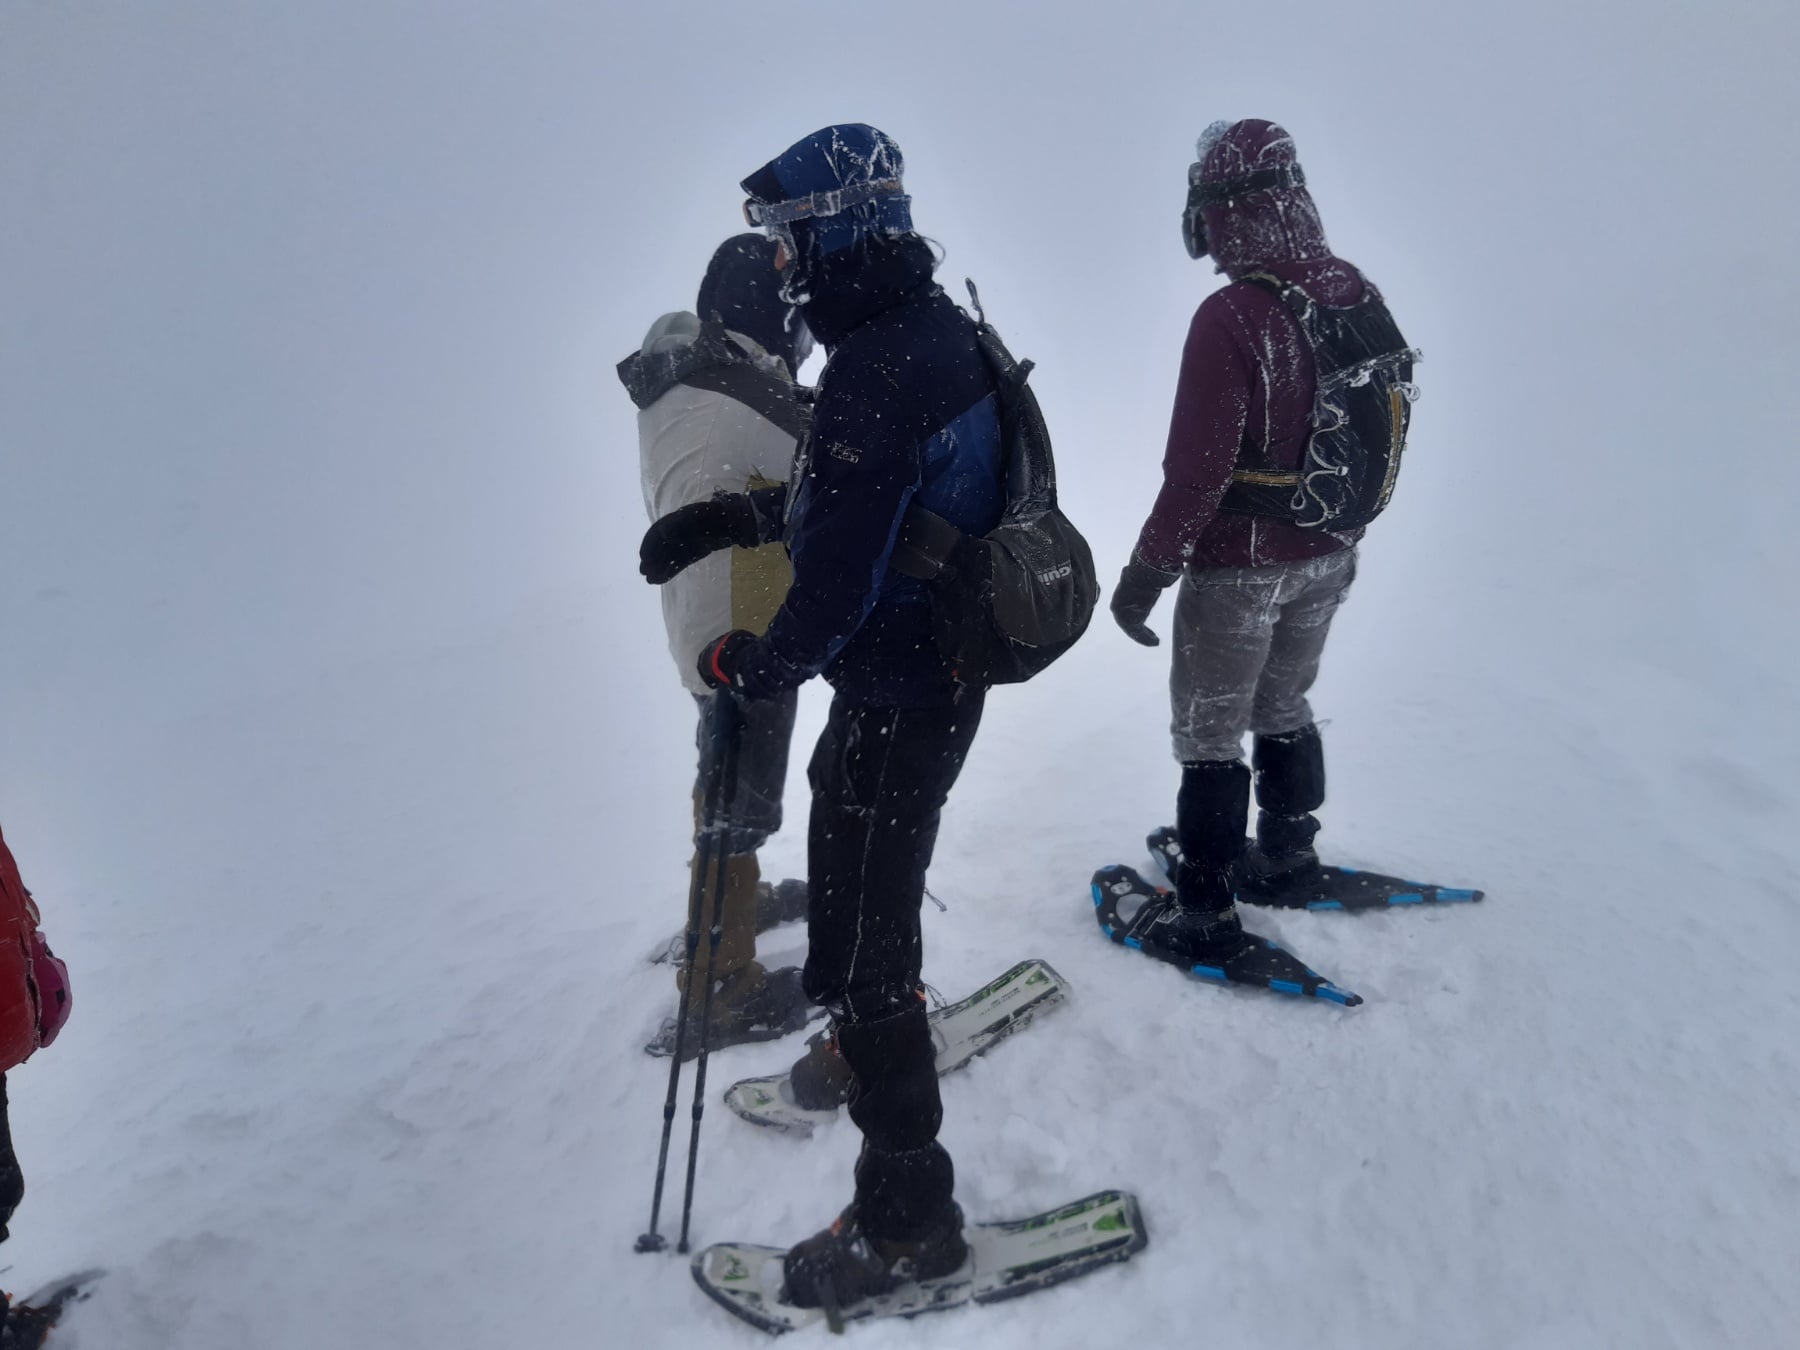 Вчора о 09:45, до Служби порятунку по допомогу звернувся 26-річний мешканець м. Миколаїв, який під час проходження туристичного маршруту с. Кваси - г. Петрос провалився у глибокий сніг.